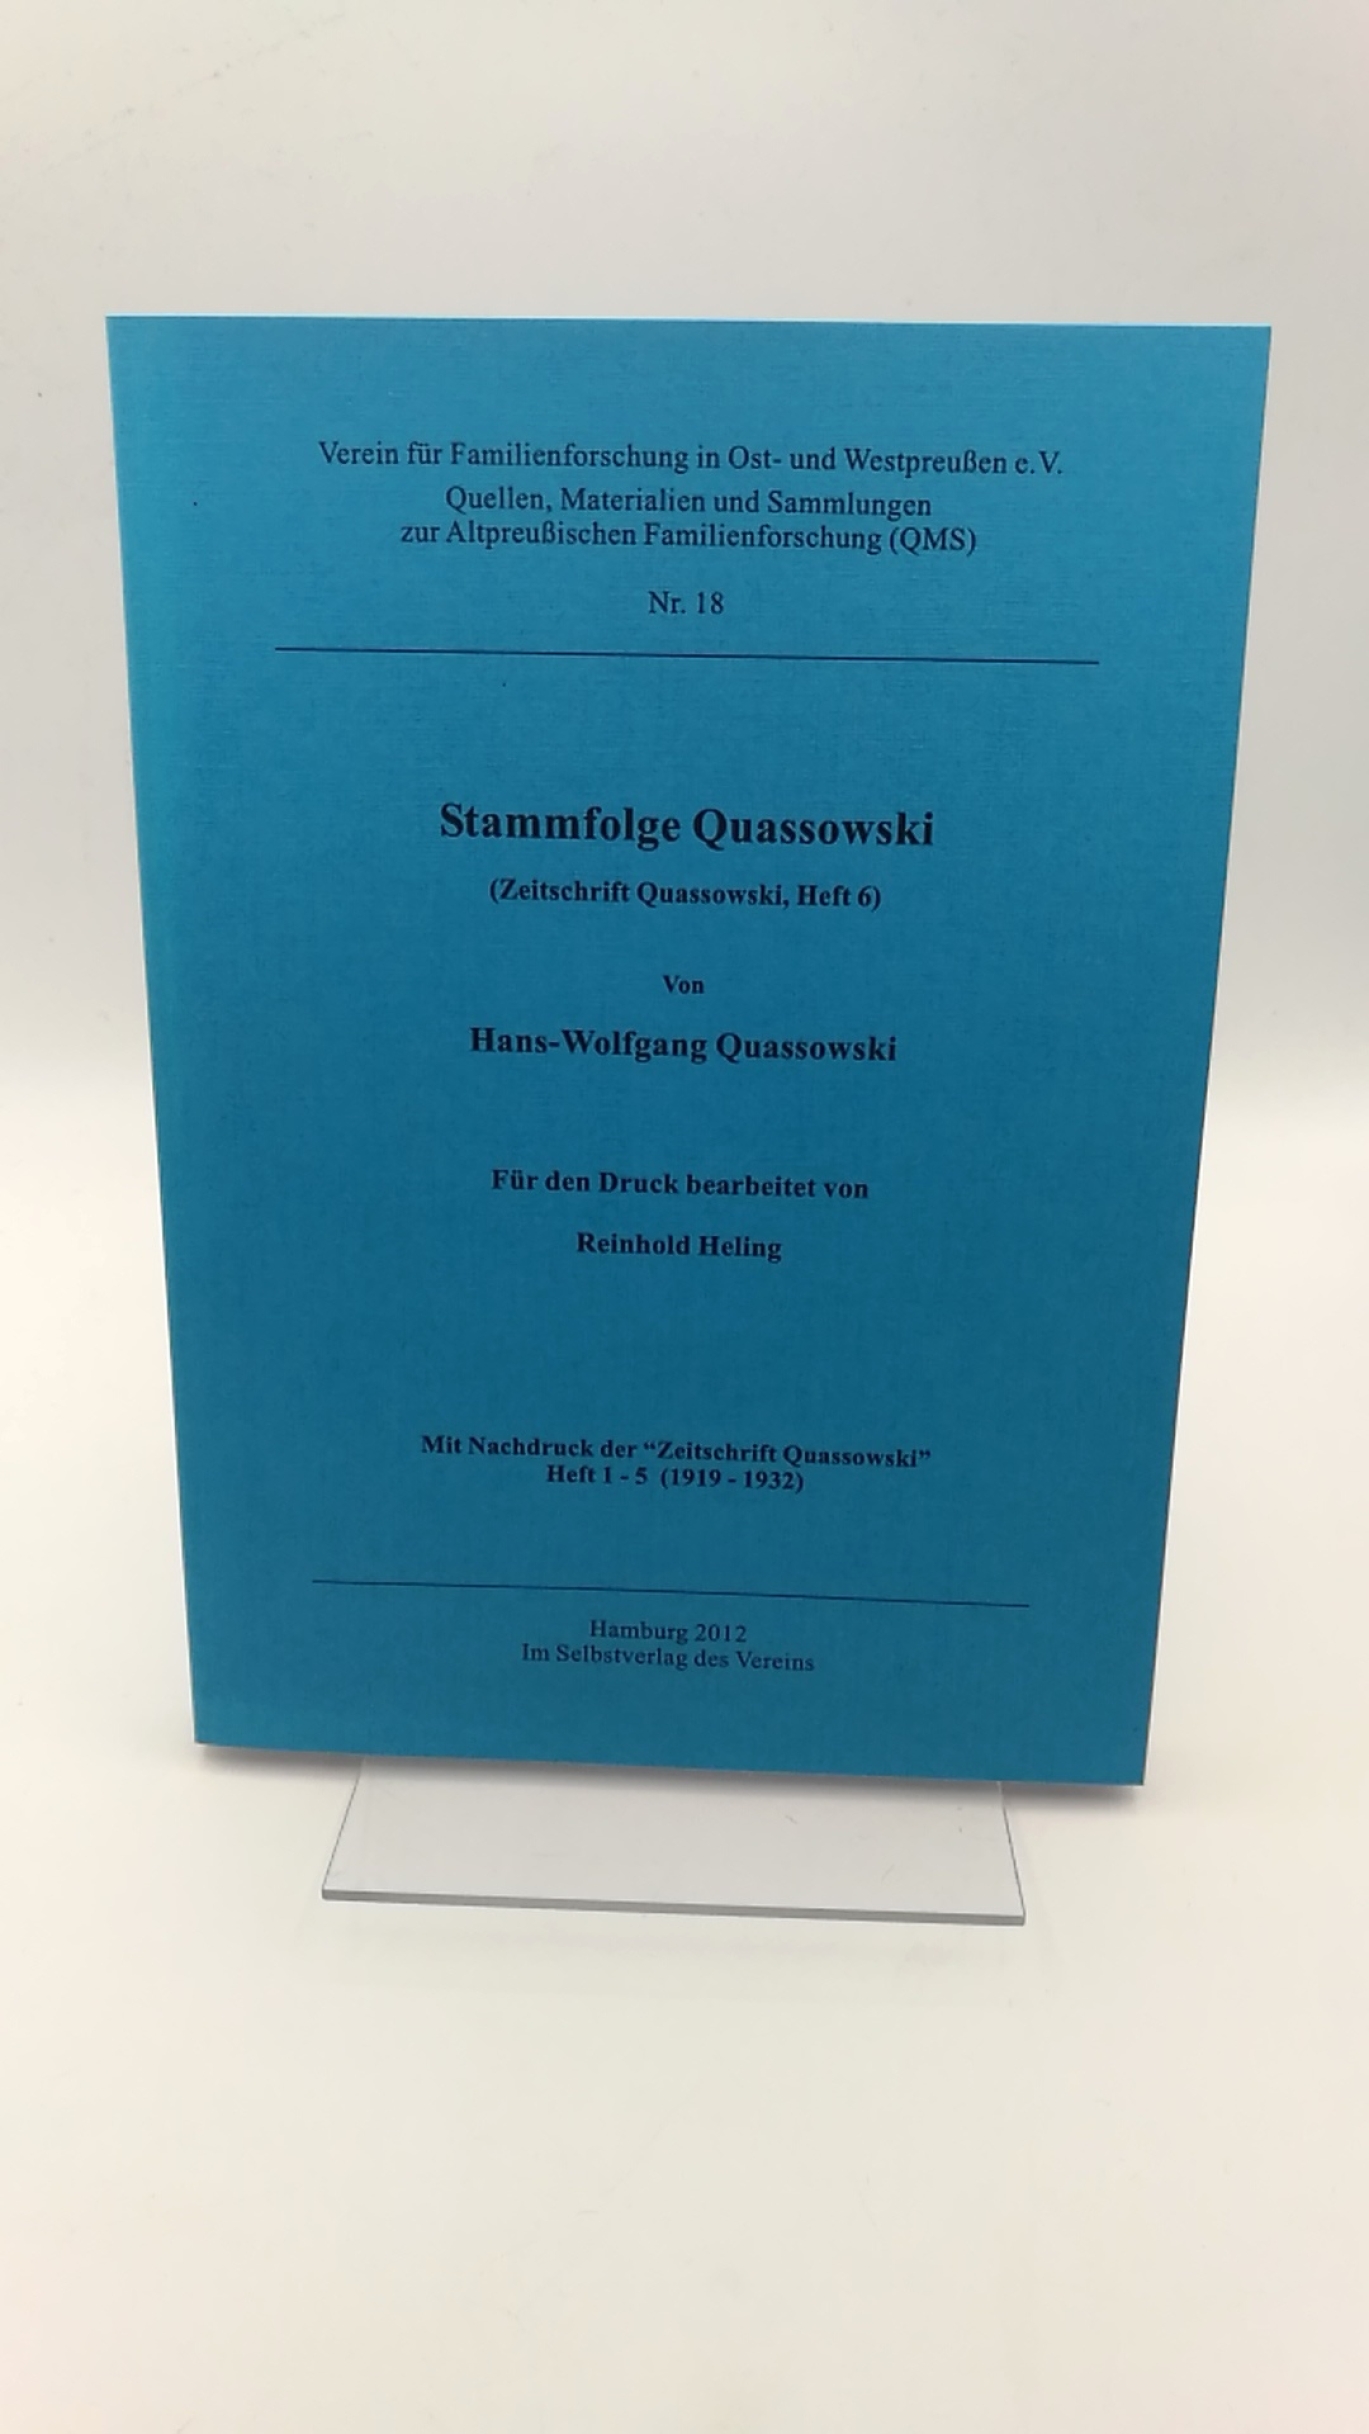 Quassowski, Hans-Wolfgang: Stammfolge Quassowski (Zeitschrift Quassowski, Heft 6) = Heft 1 - 5 (1919 - 1932) in 1 Band